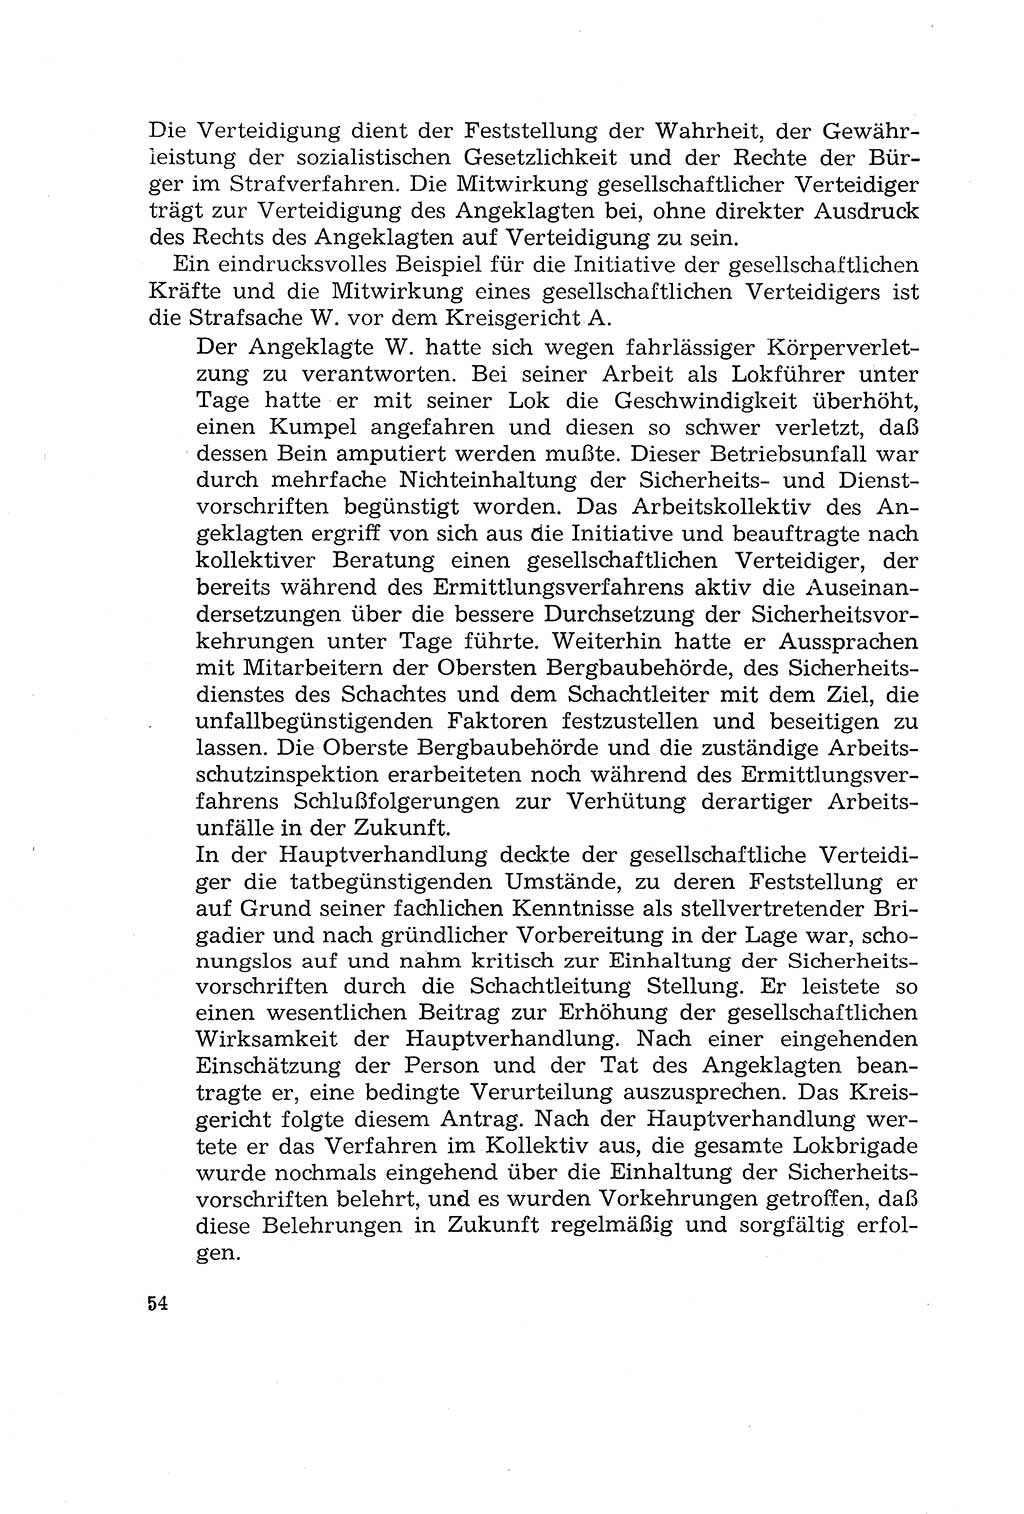 Die Mitwirkung der Werktätigen am Strafverfahren [Deutsche Demokratische Republik (DDR)] 1966, Seite 54 (Mitw. Str.-Verf. DDR 1966, S. 54)